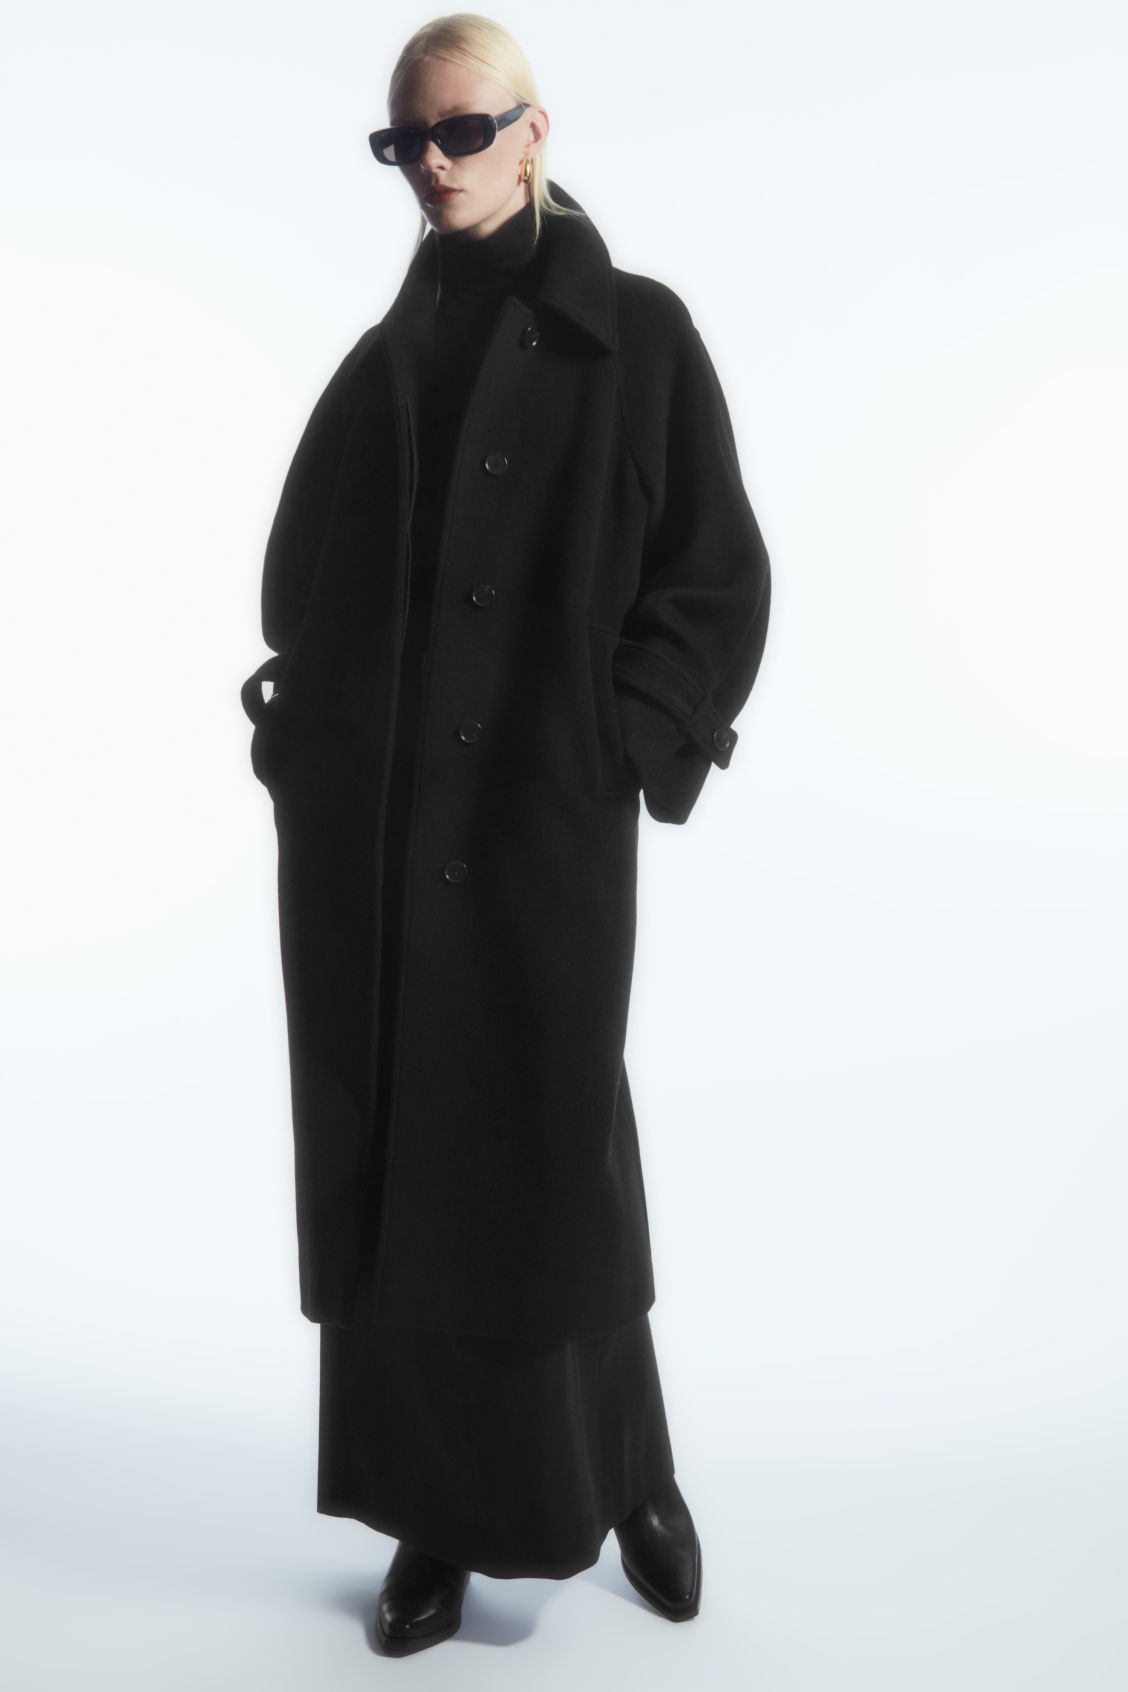 COS manteau noir oversize silhouette arrondie